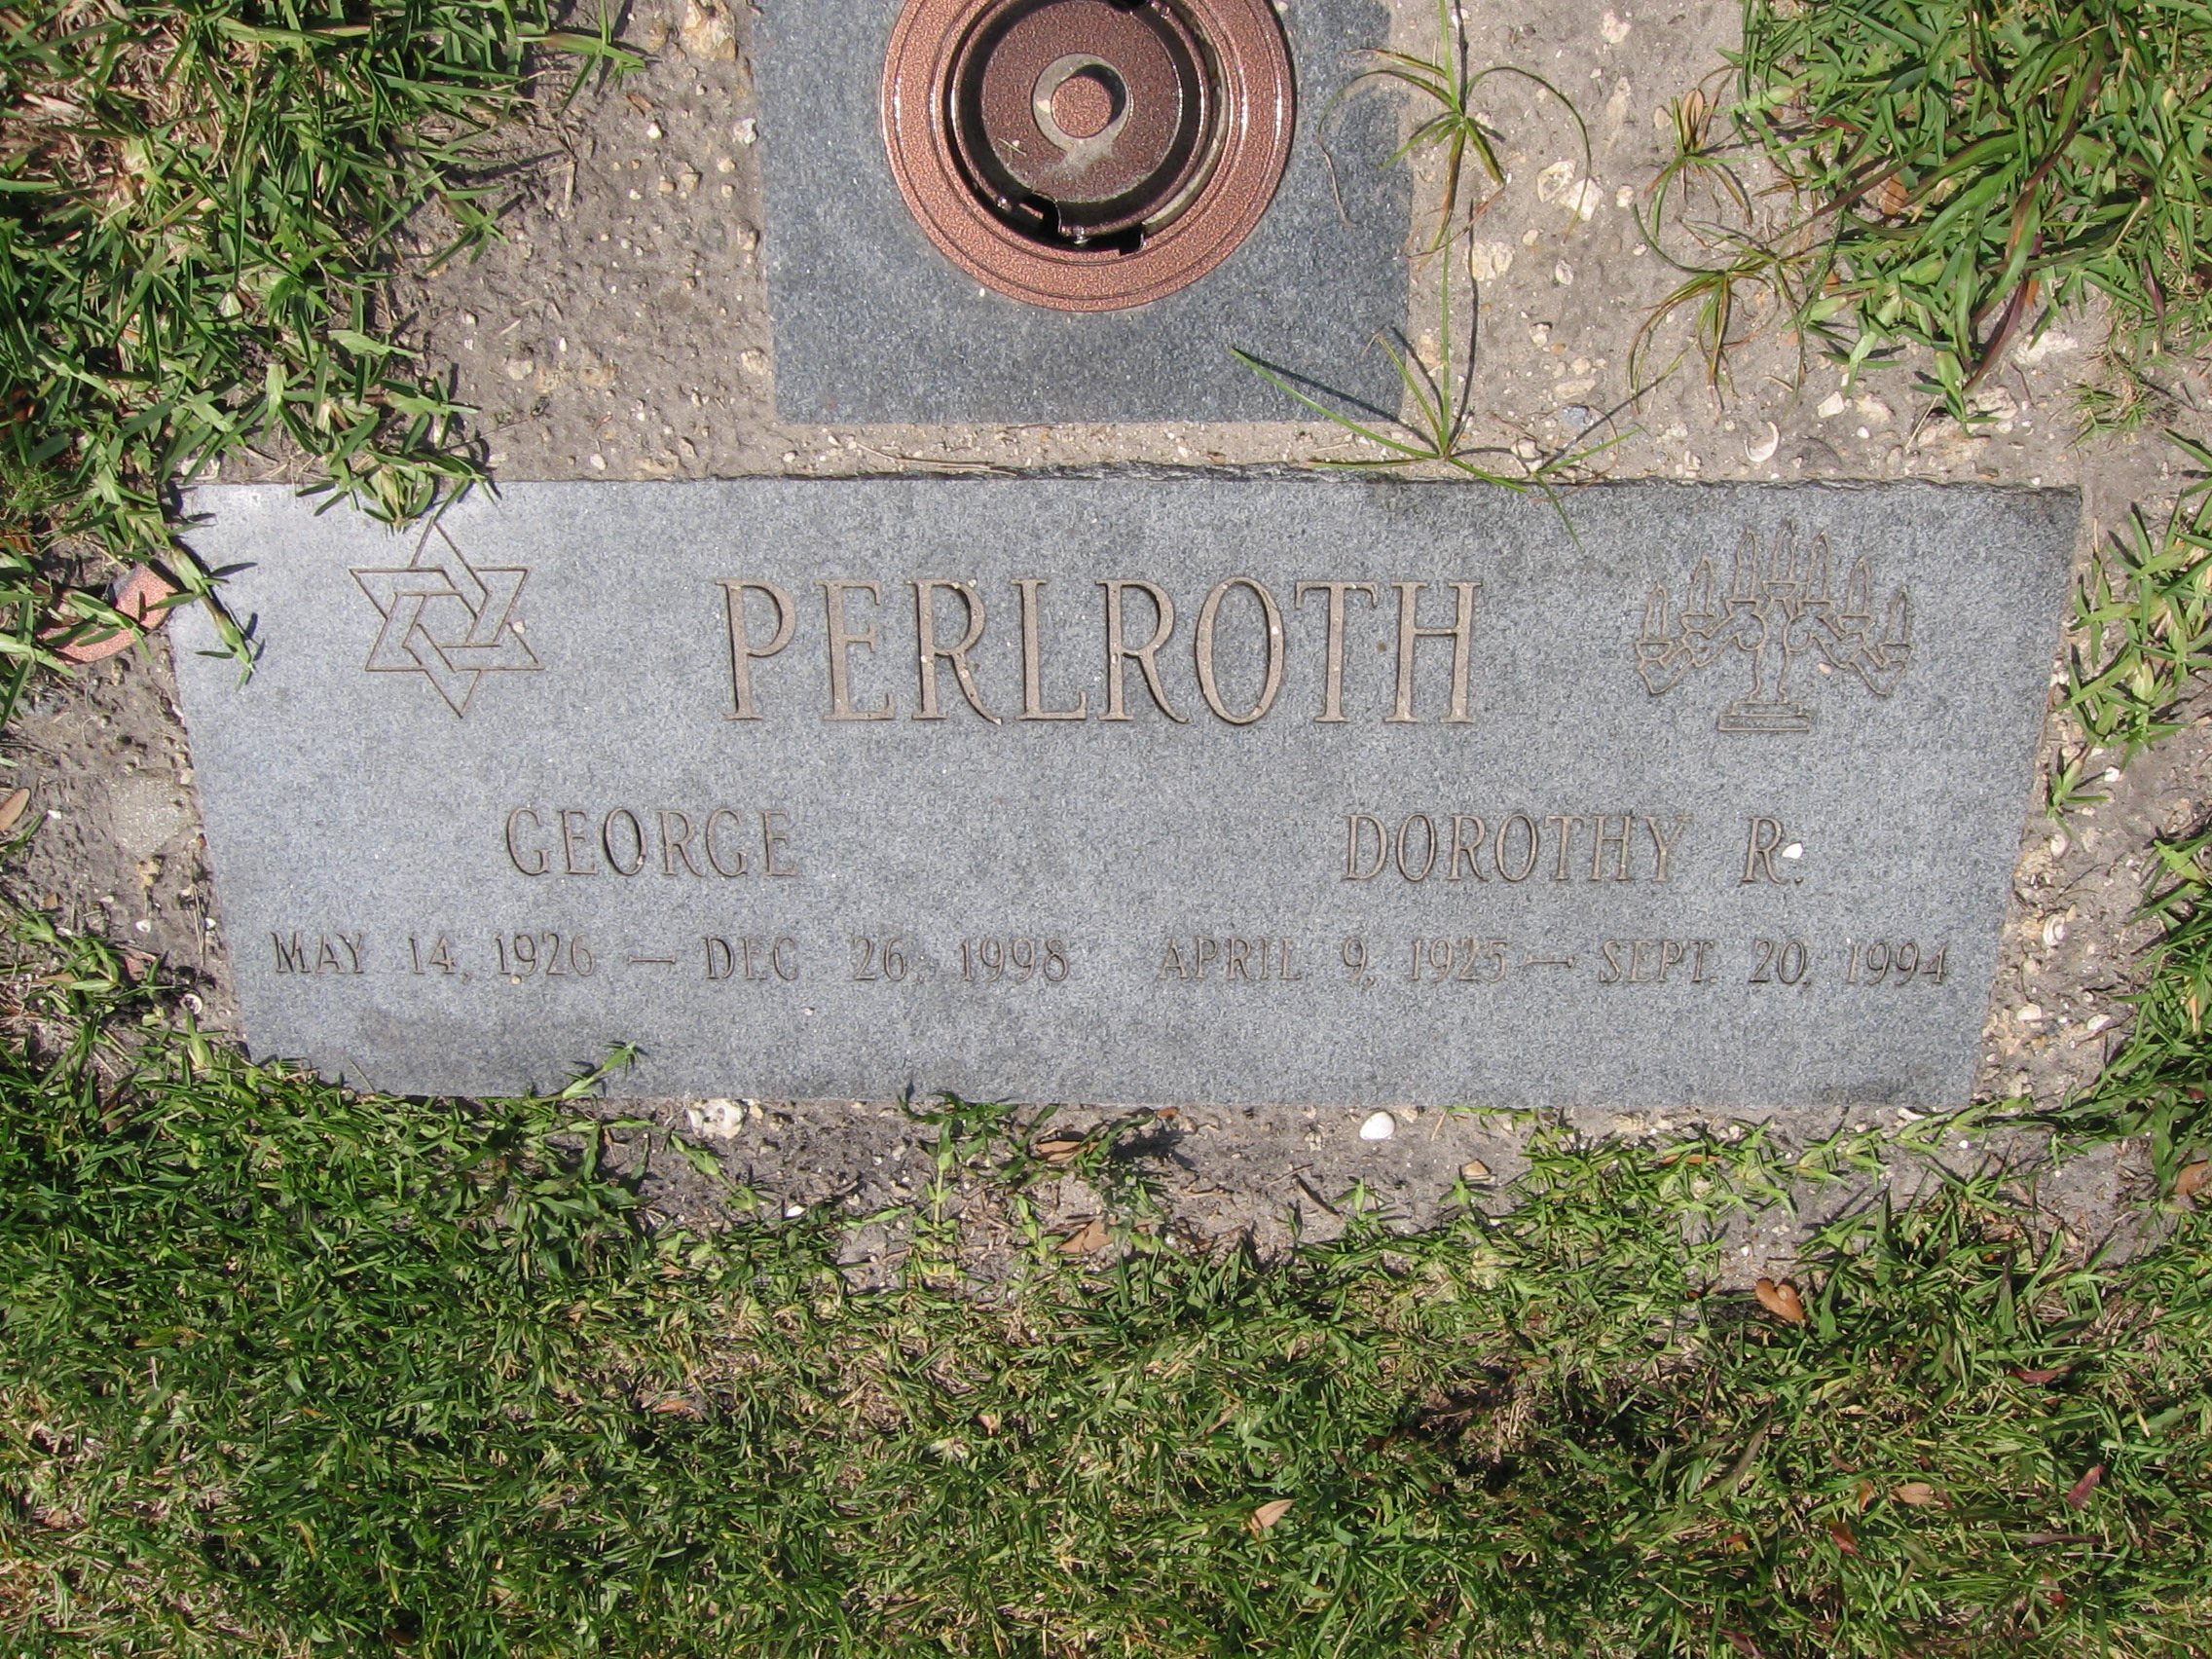 Dorothy R Perlroth